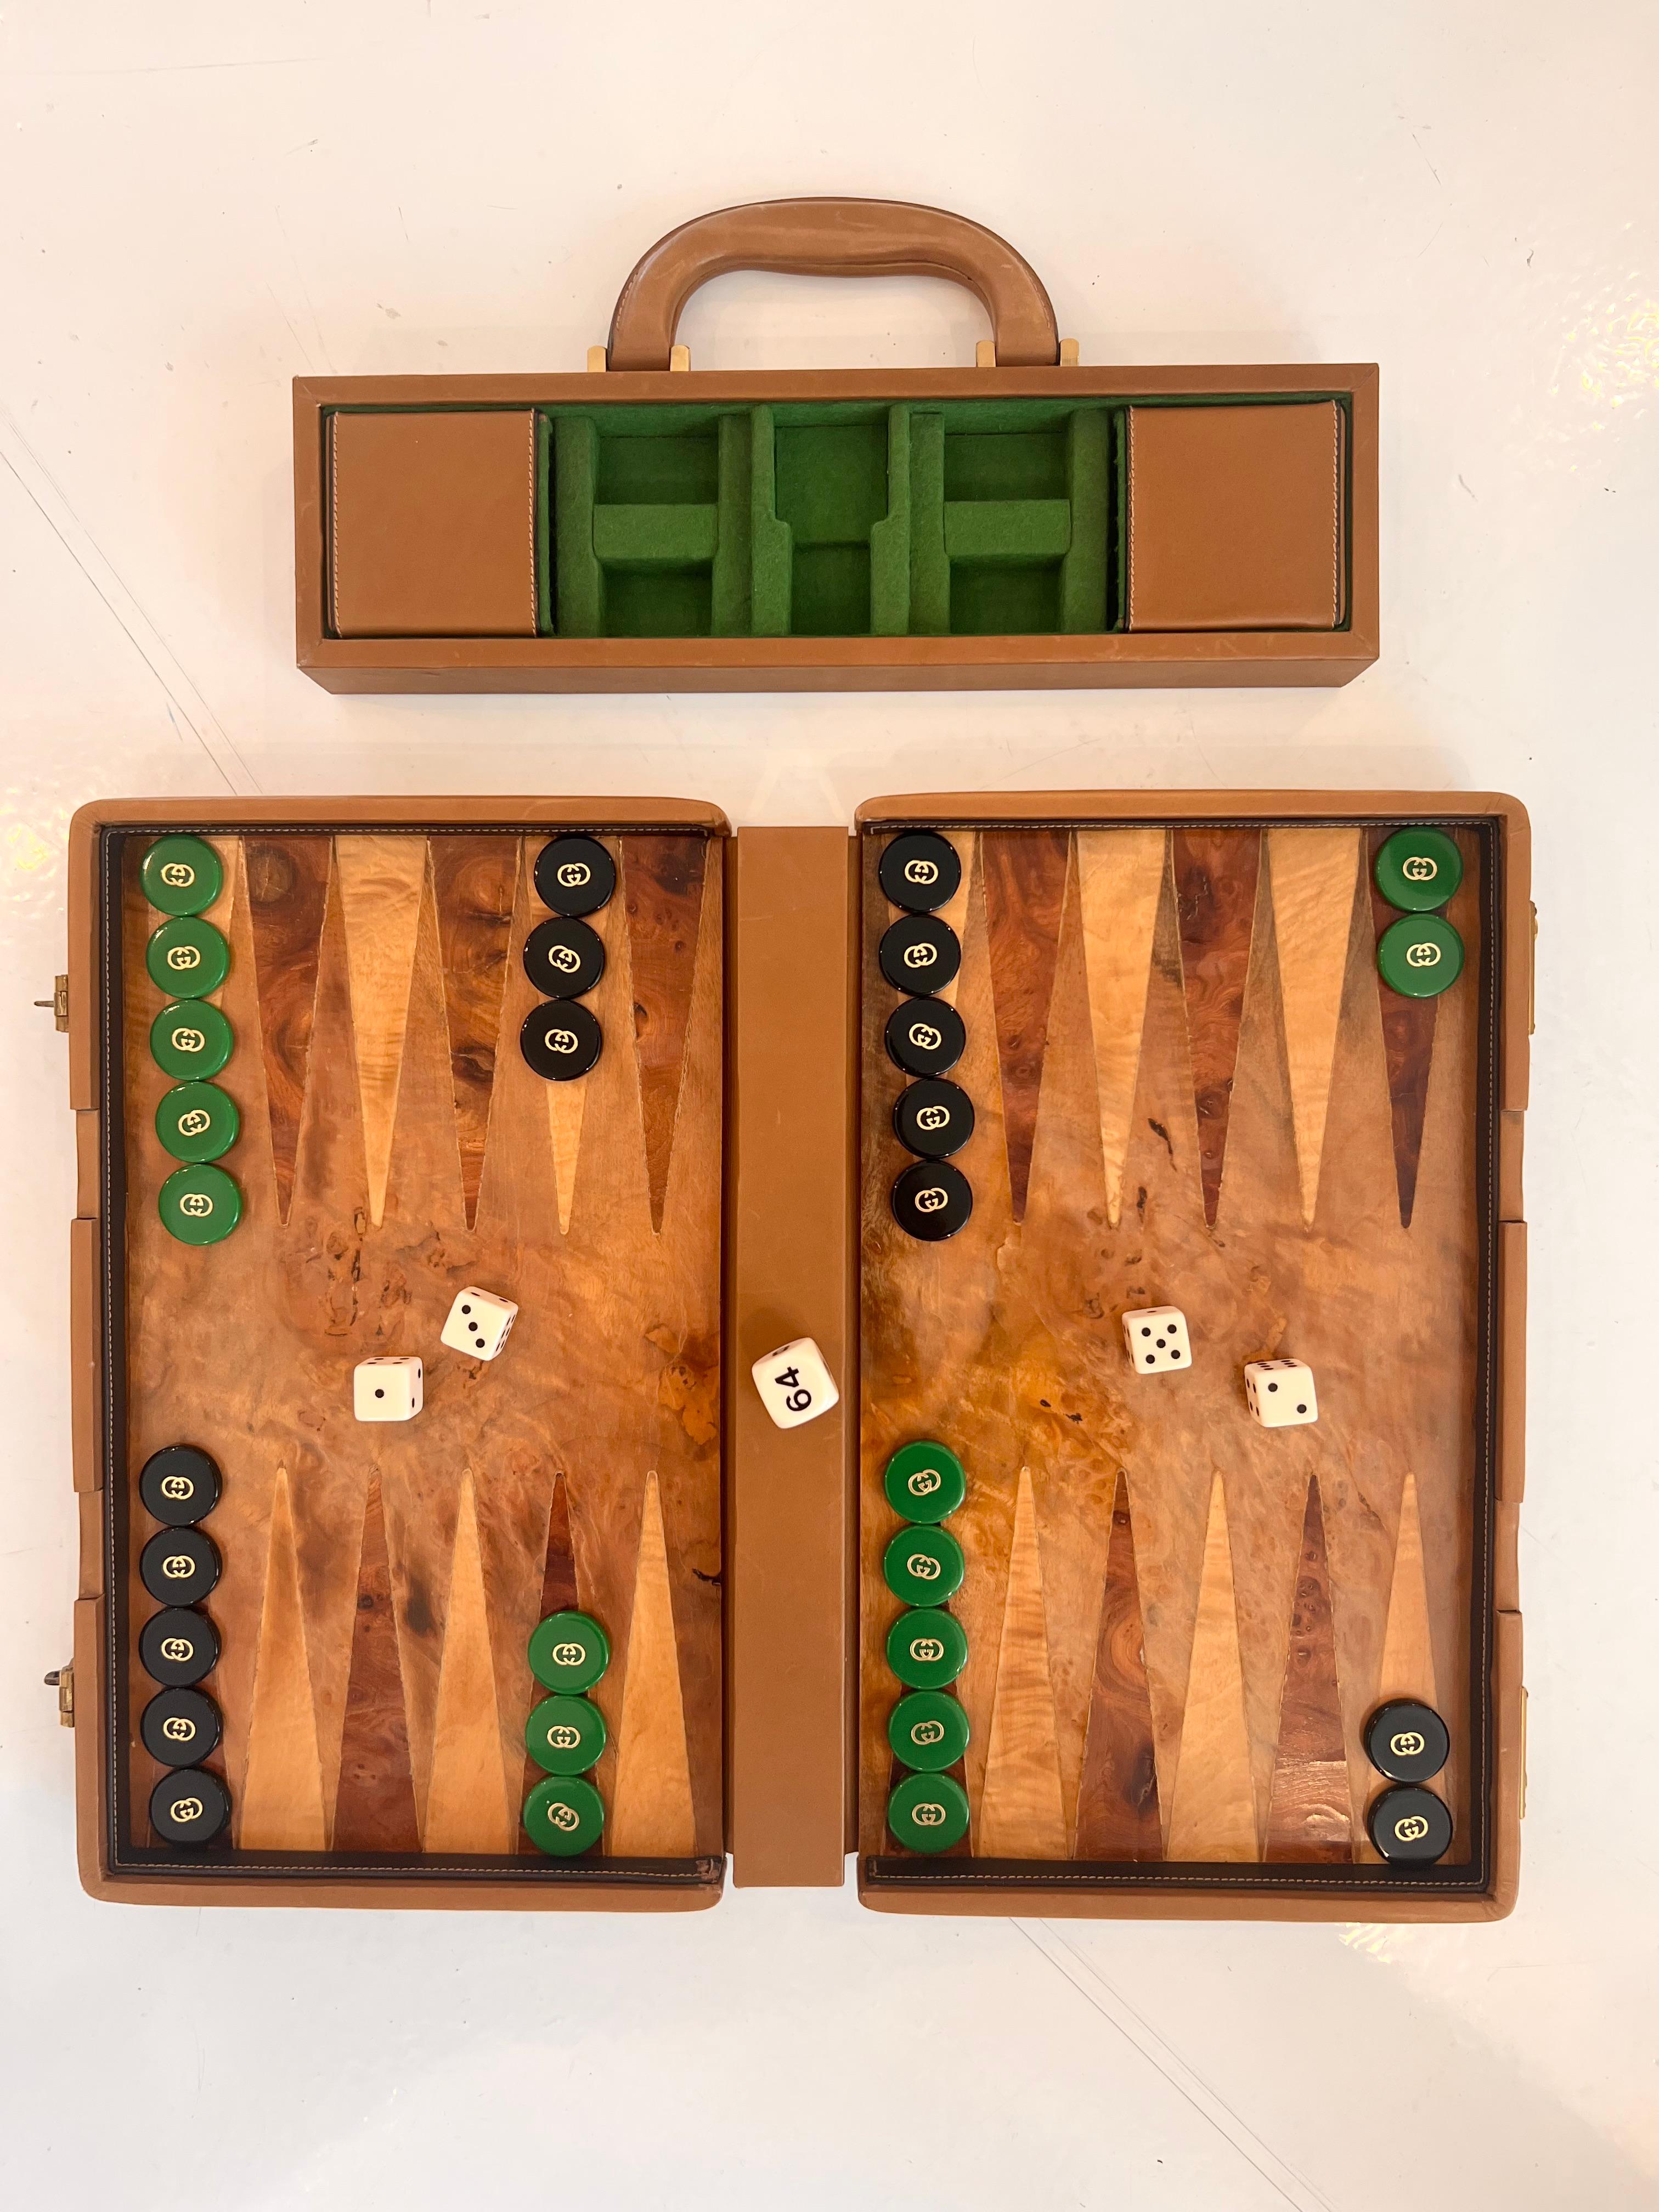 Jeu de backgammon portable Vintage Gucci. Garniture en cuir fauve avec bois de ronce sur le devant et le dos de l'étui et plateau de jeu/surface de jeu en bois de ronce. 15 jetons de backgammon verts et 15 jetons de backgammon noirs, tous présents